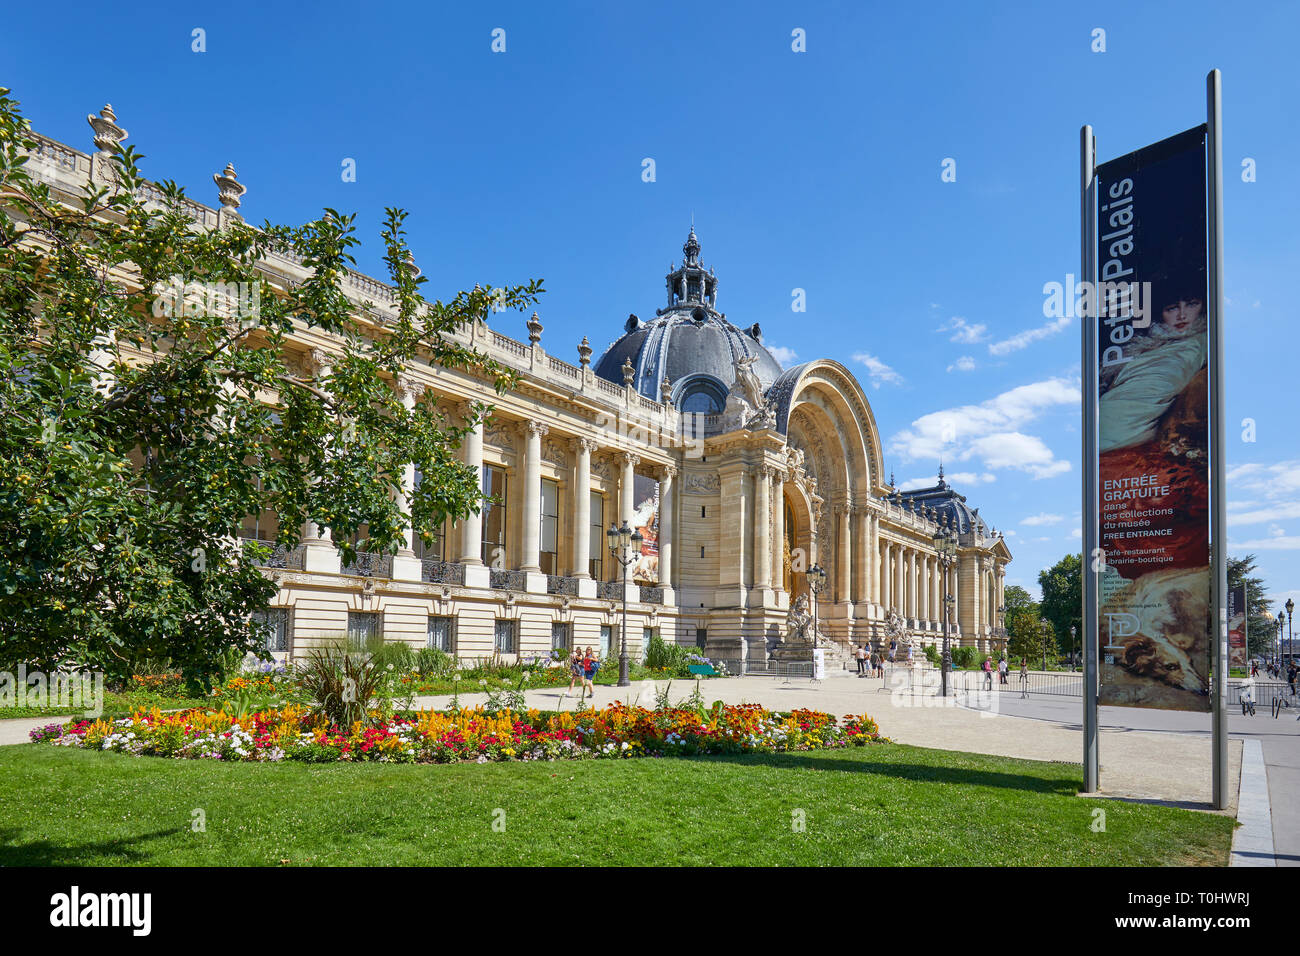 Parigi, Francia - 21 luglio 2017: Petit Palais, affissioni e aiuola di fiori in una soleggiata giornata estiva, cielo blu chiaro a Parigi, Francia. Foto Stock